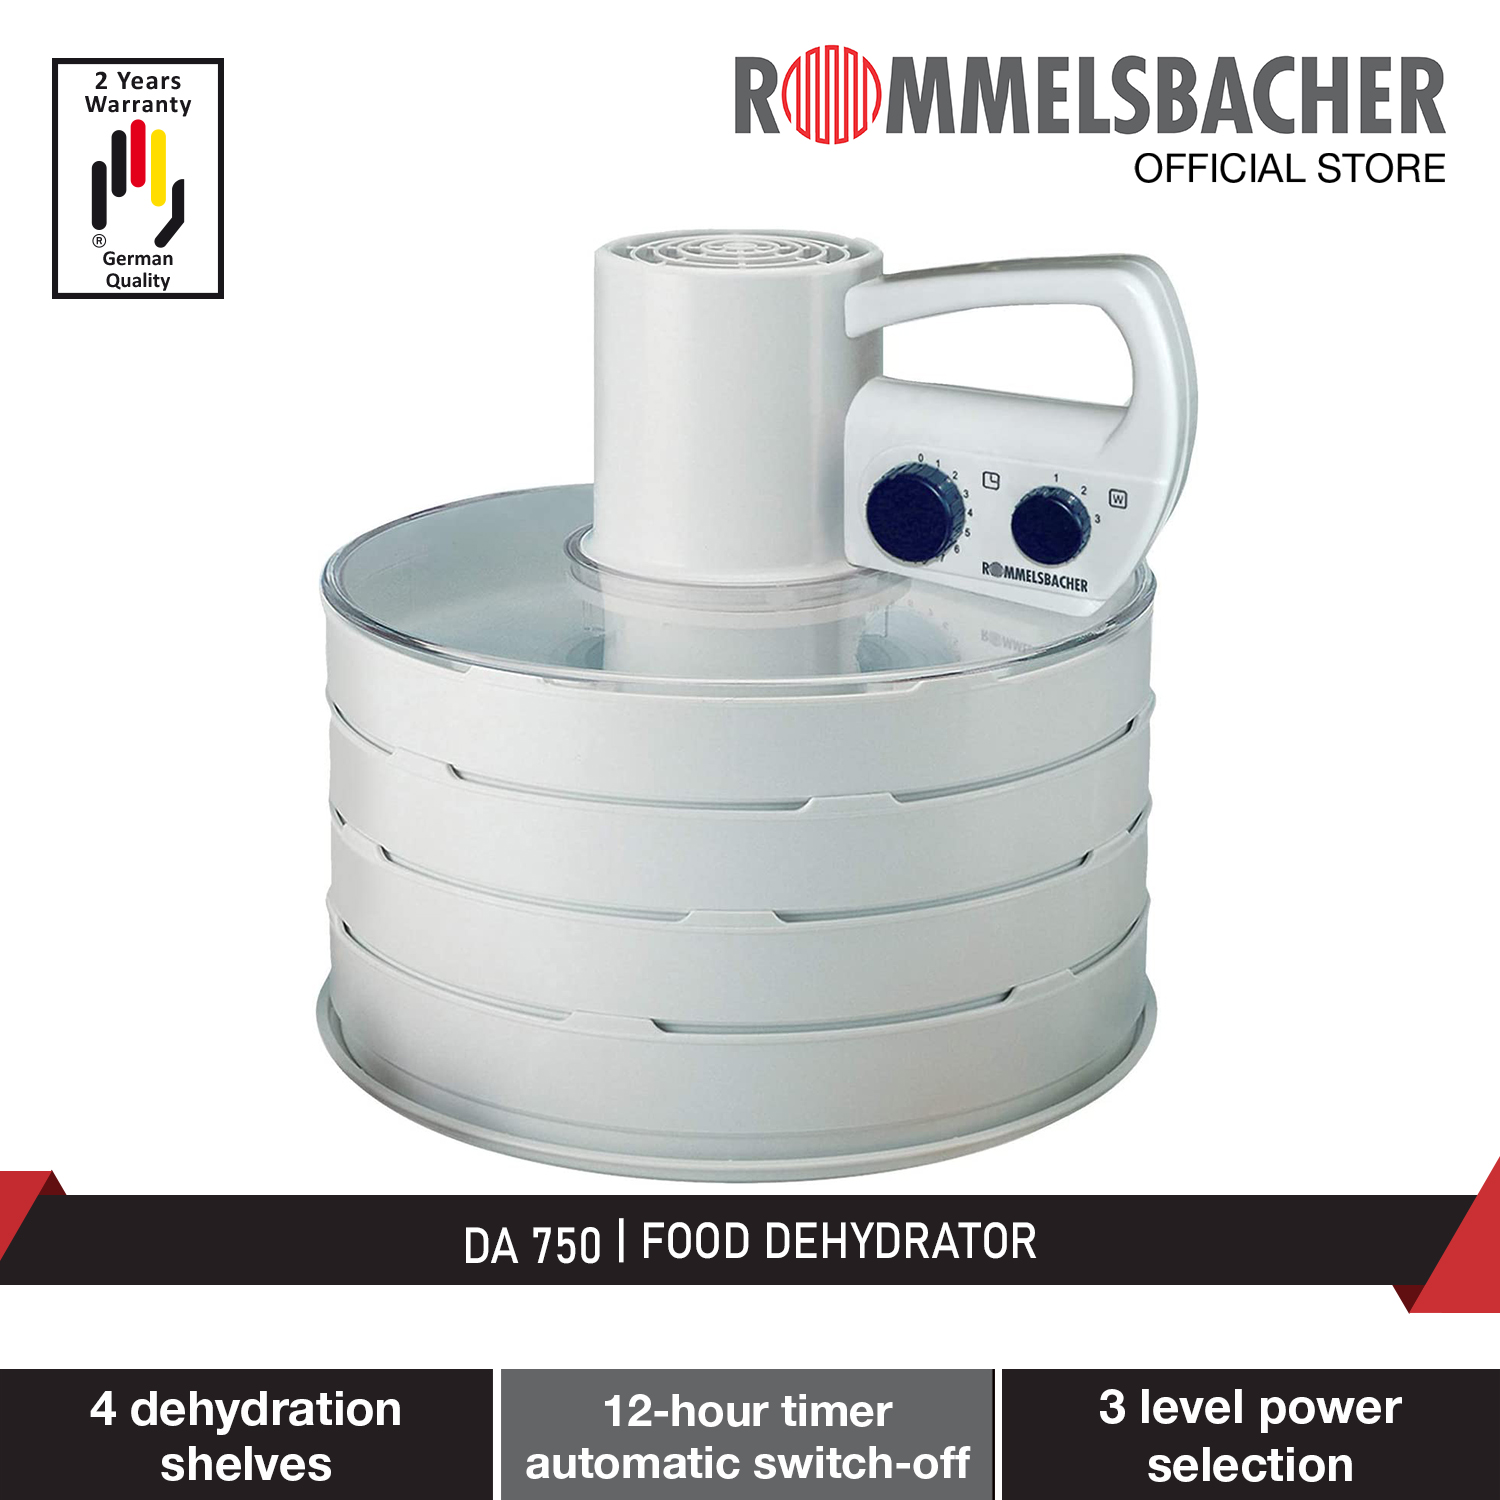 Tonen Spreekwoord Statistisch Rommelsbacher DA 750 Food Dehydrator 2 Year Warranty | Lazada Singapore